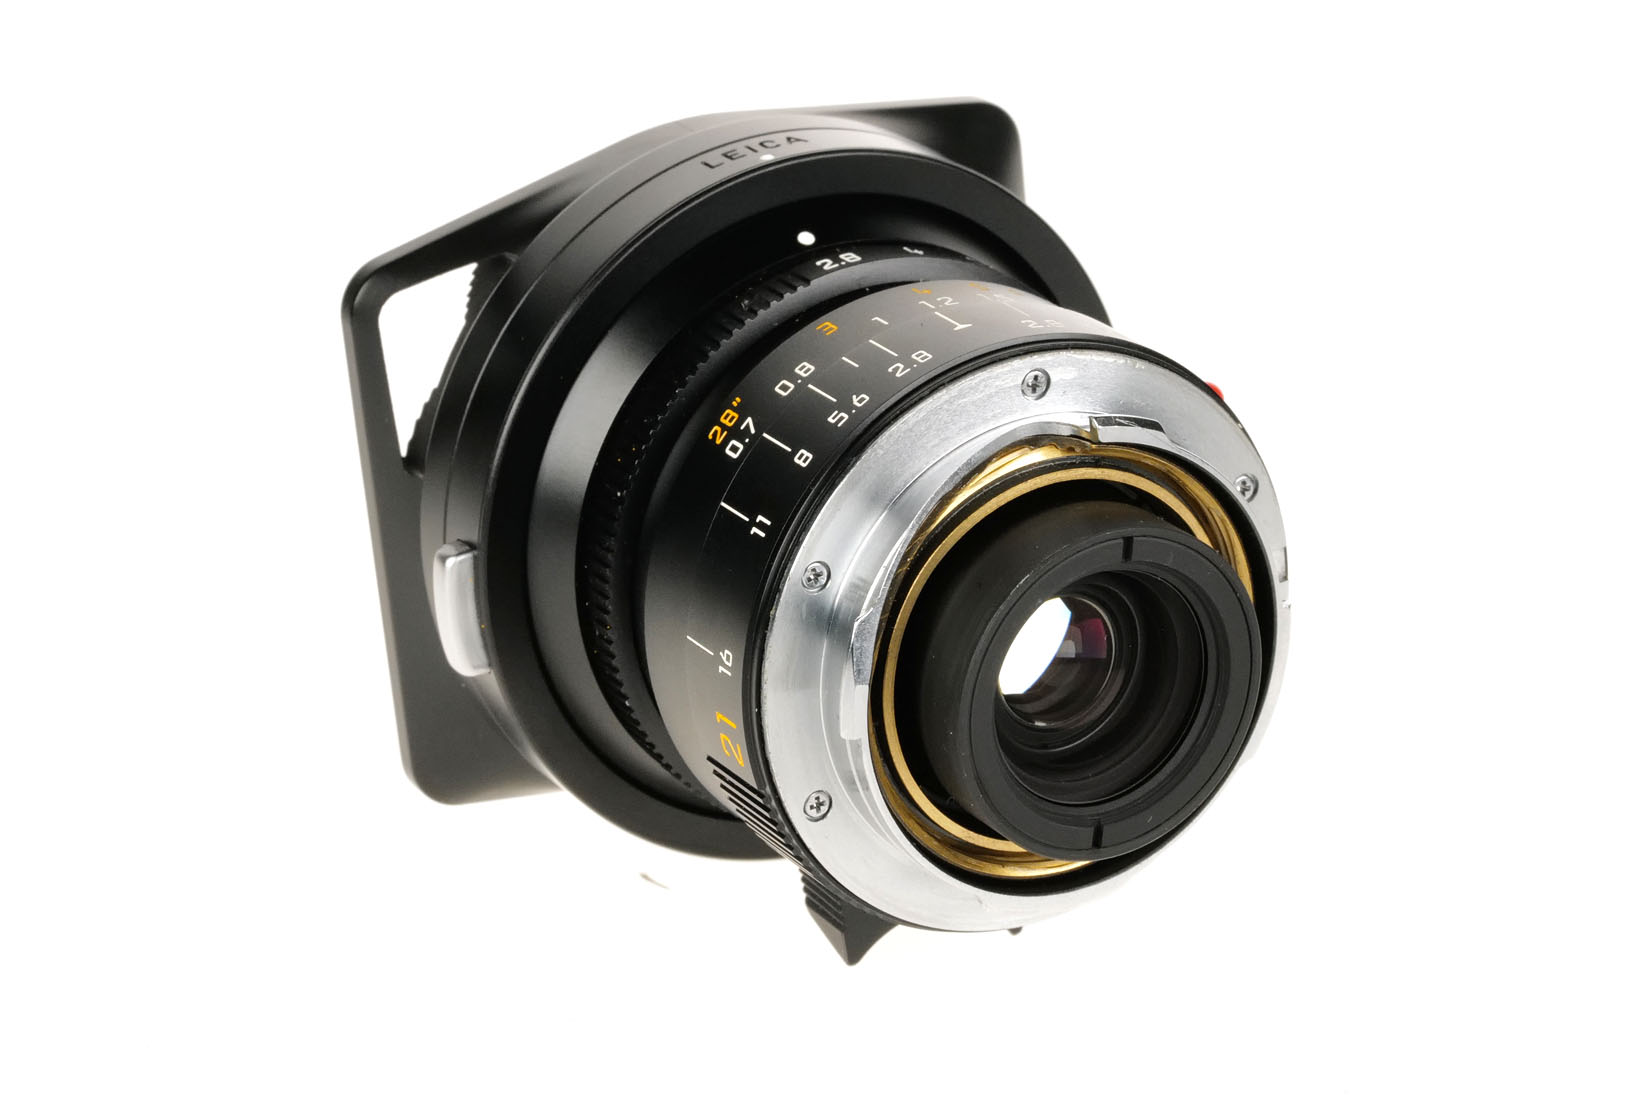 Leica ELMARIT-M 2.8/21mm ASPH. 11135